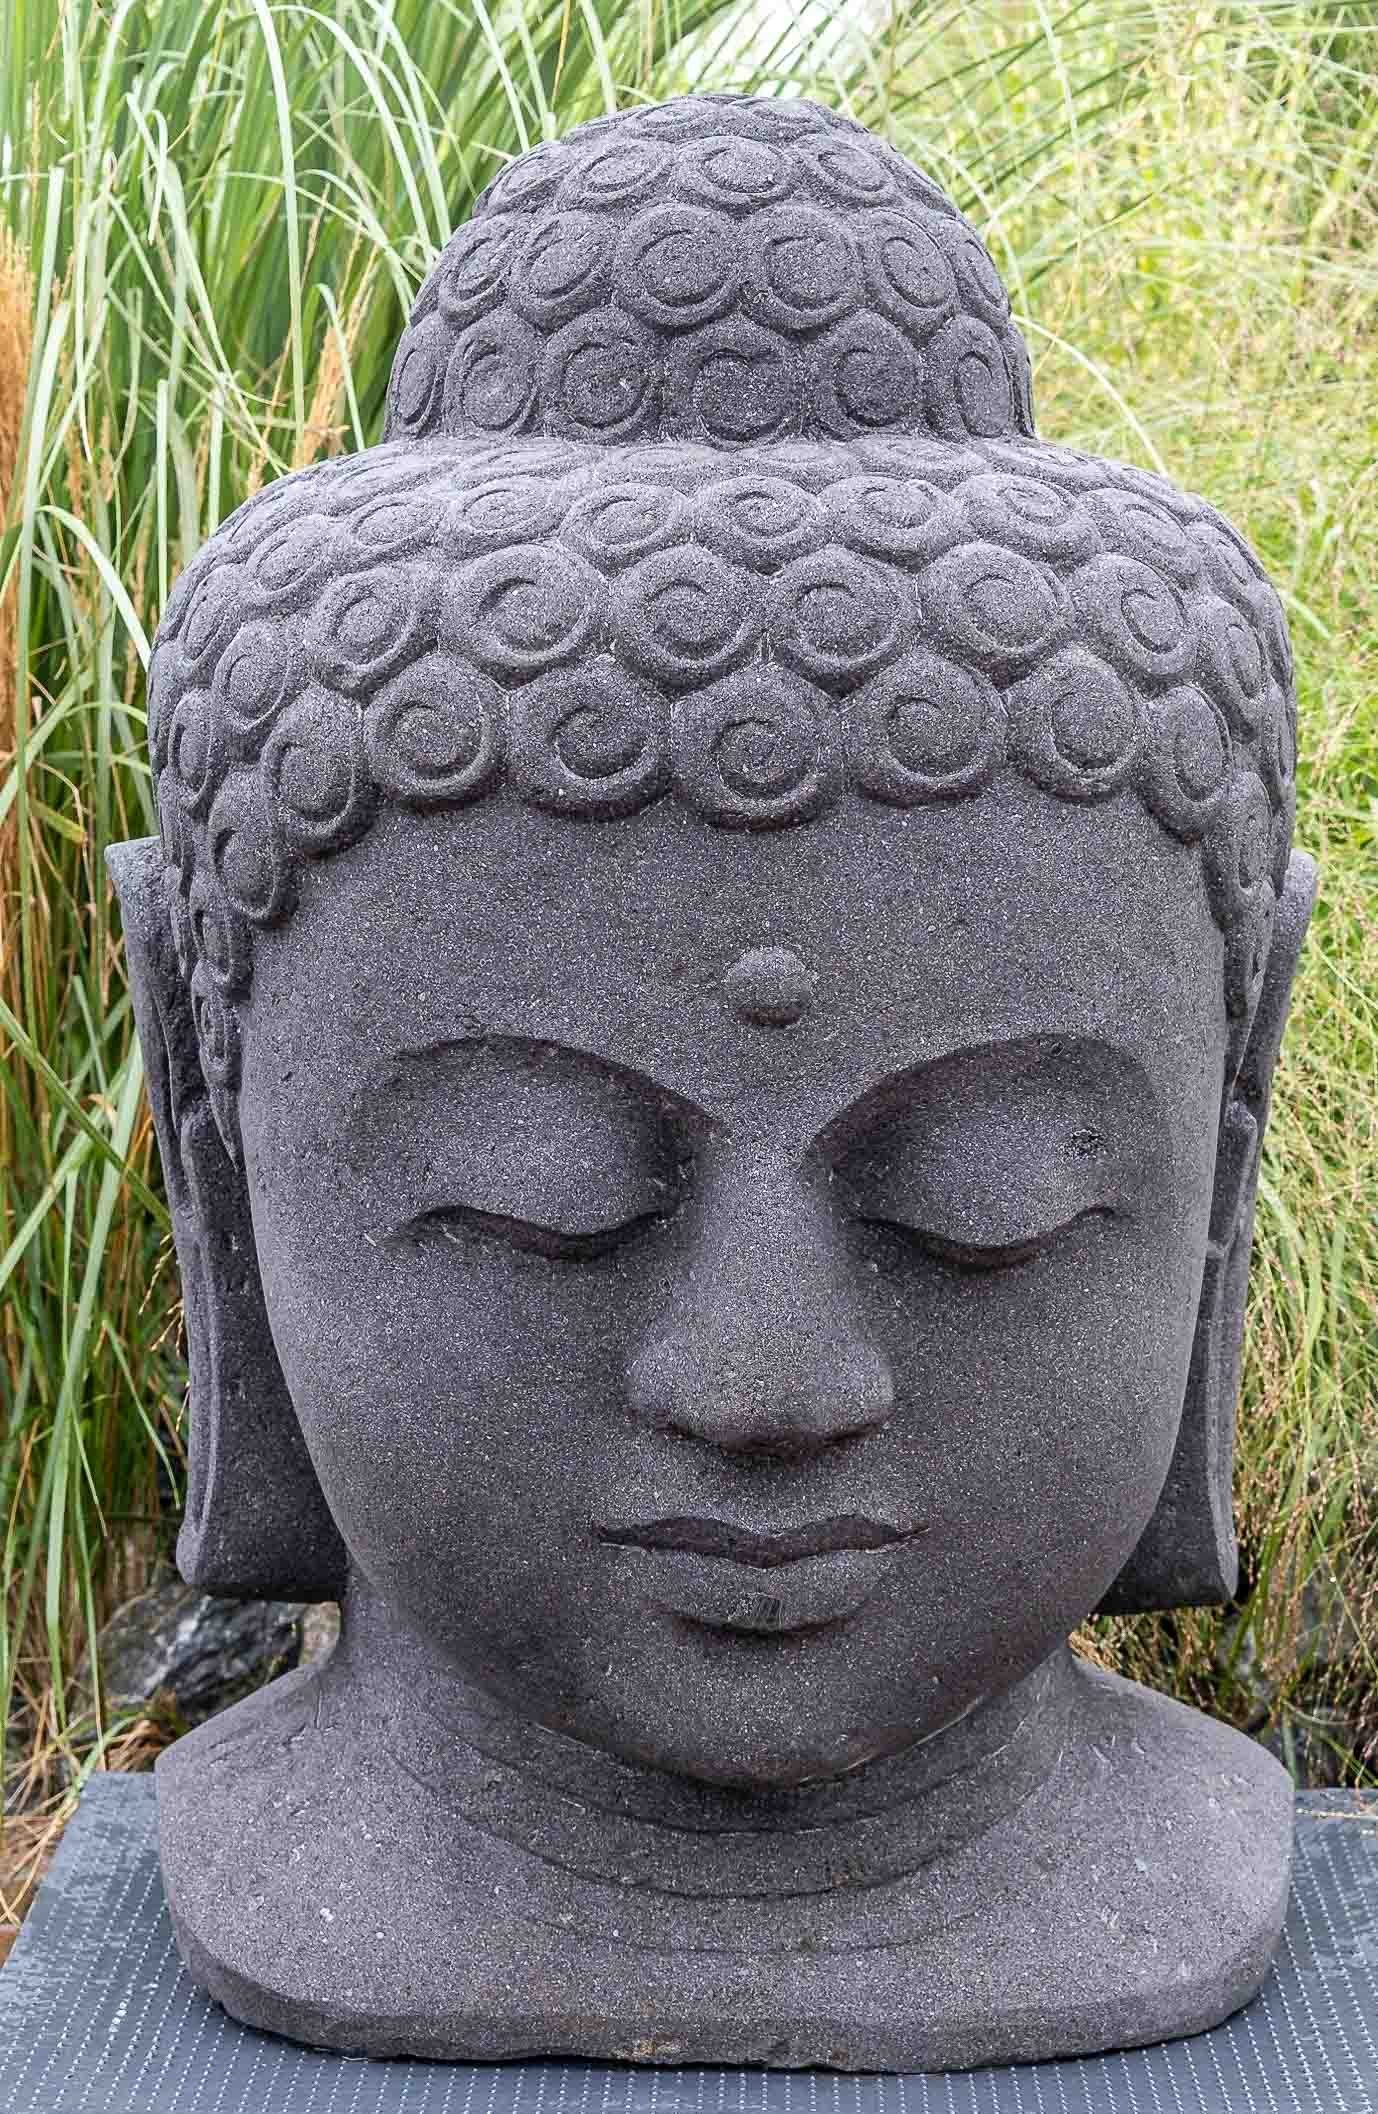 IDYL Gartenfigur Buddha, Witterungsbeständig gegen Frost, Regen und UV-Strahlung.